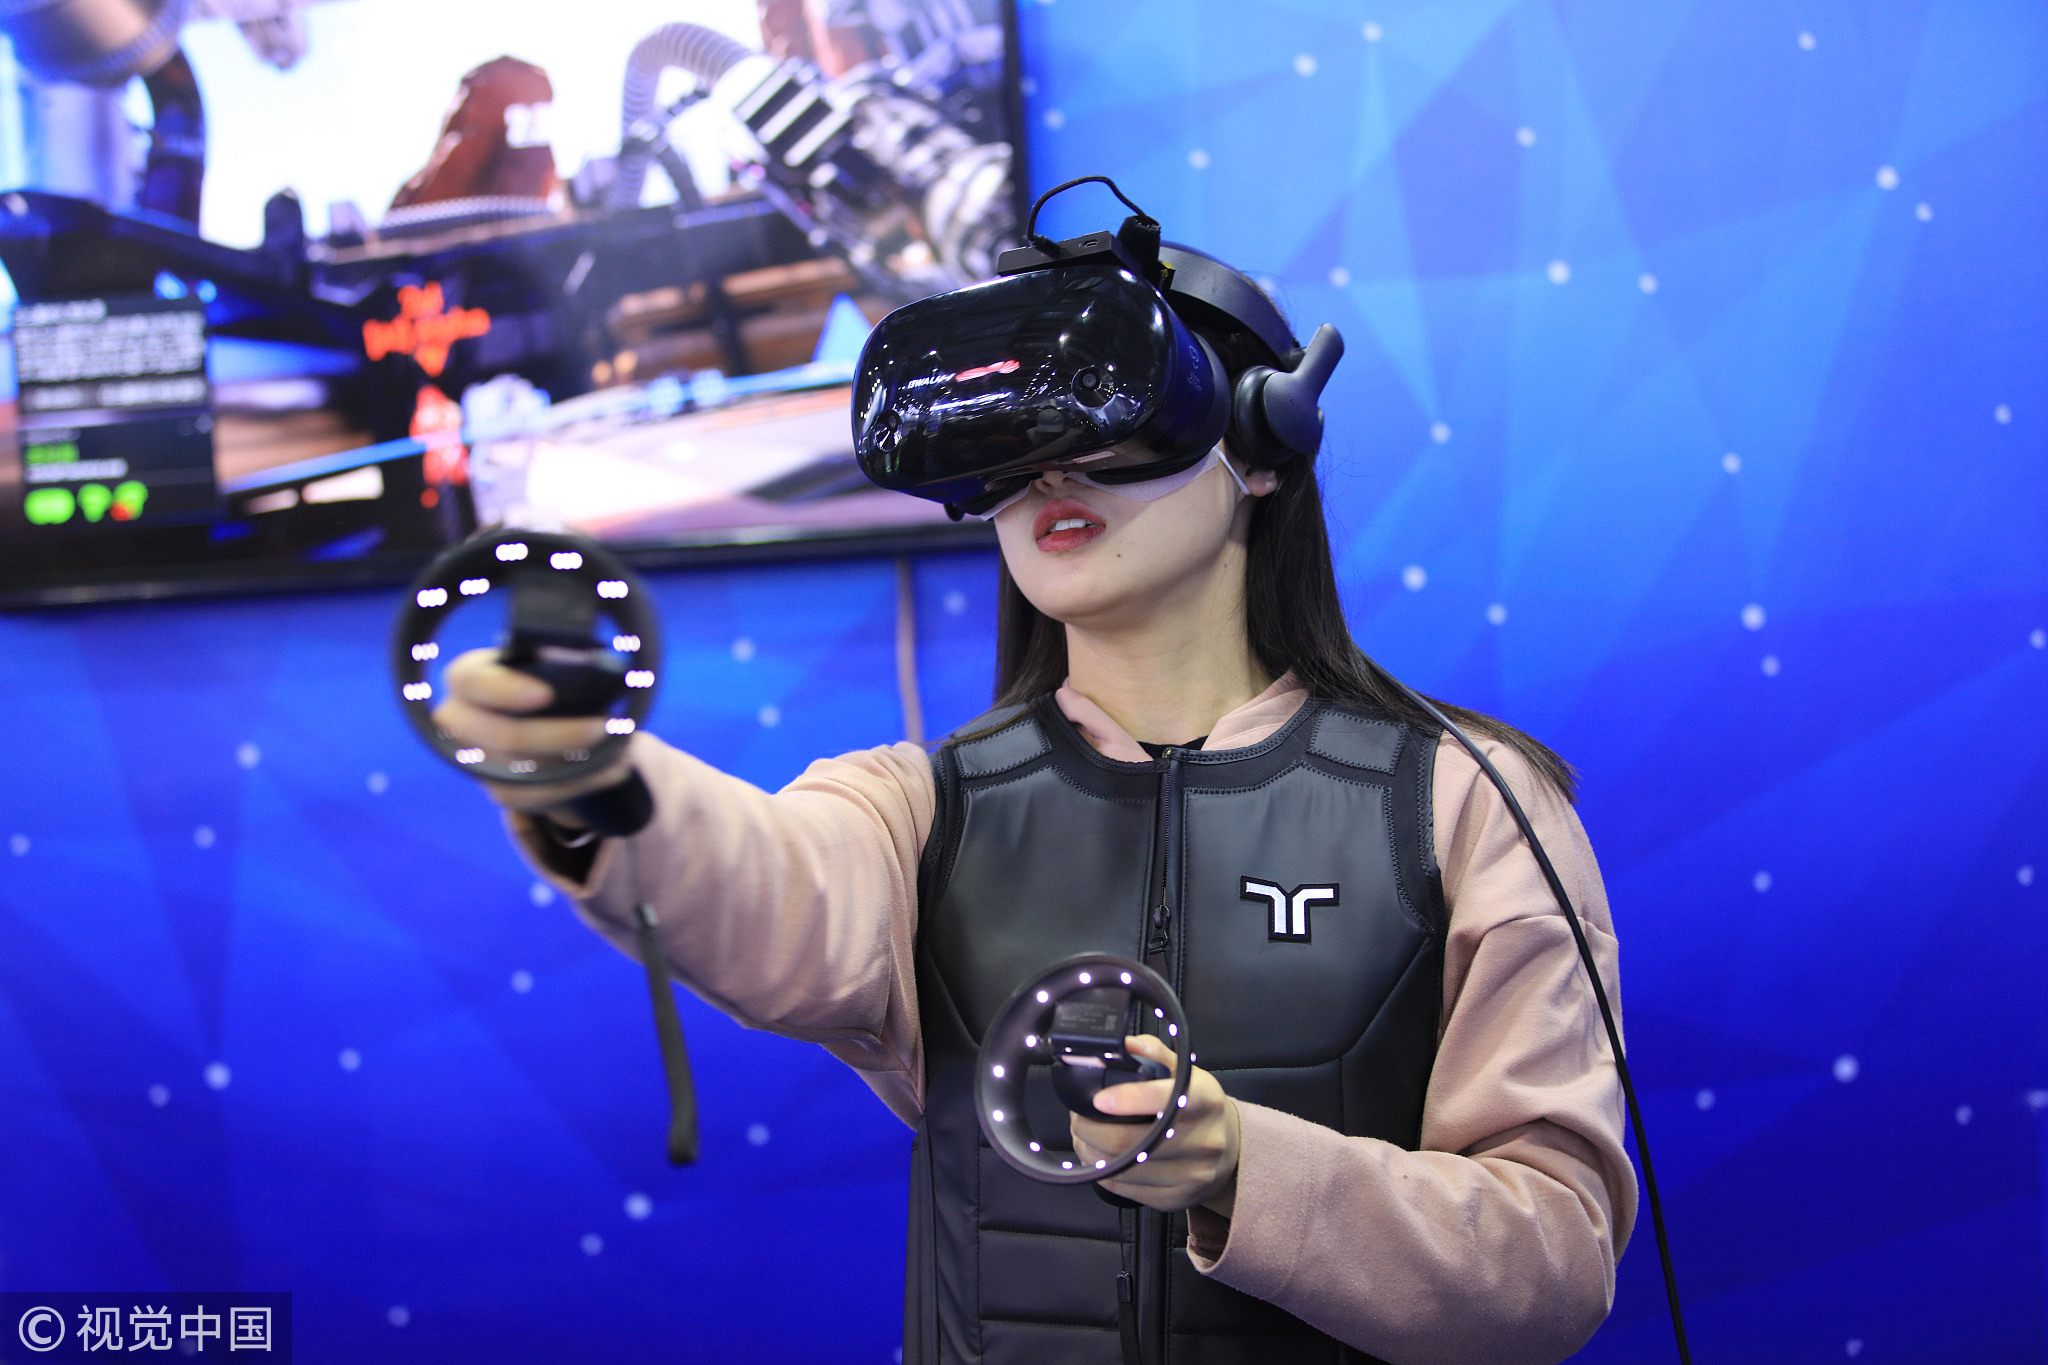 Vr трансляций. VR g04bs China. Девушка в ВР очках. VR Star в Китае виртуальная реальность. VR соревнования.